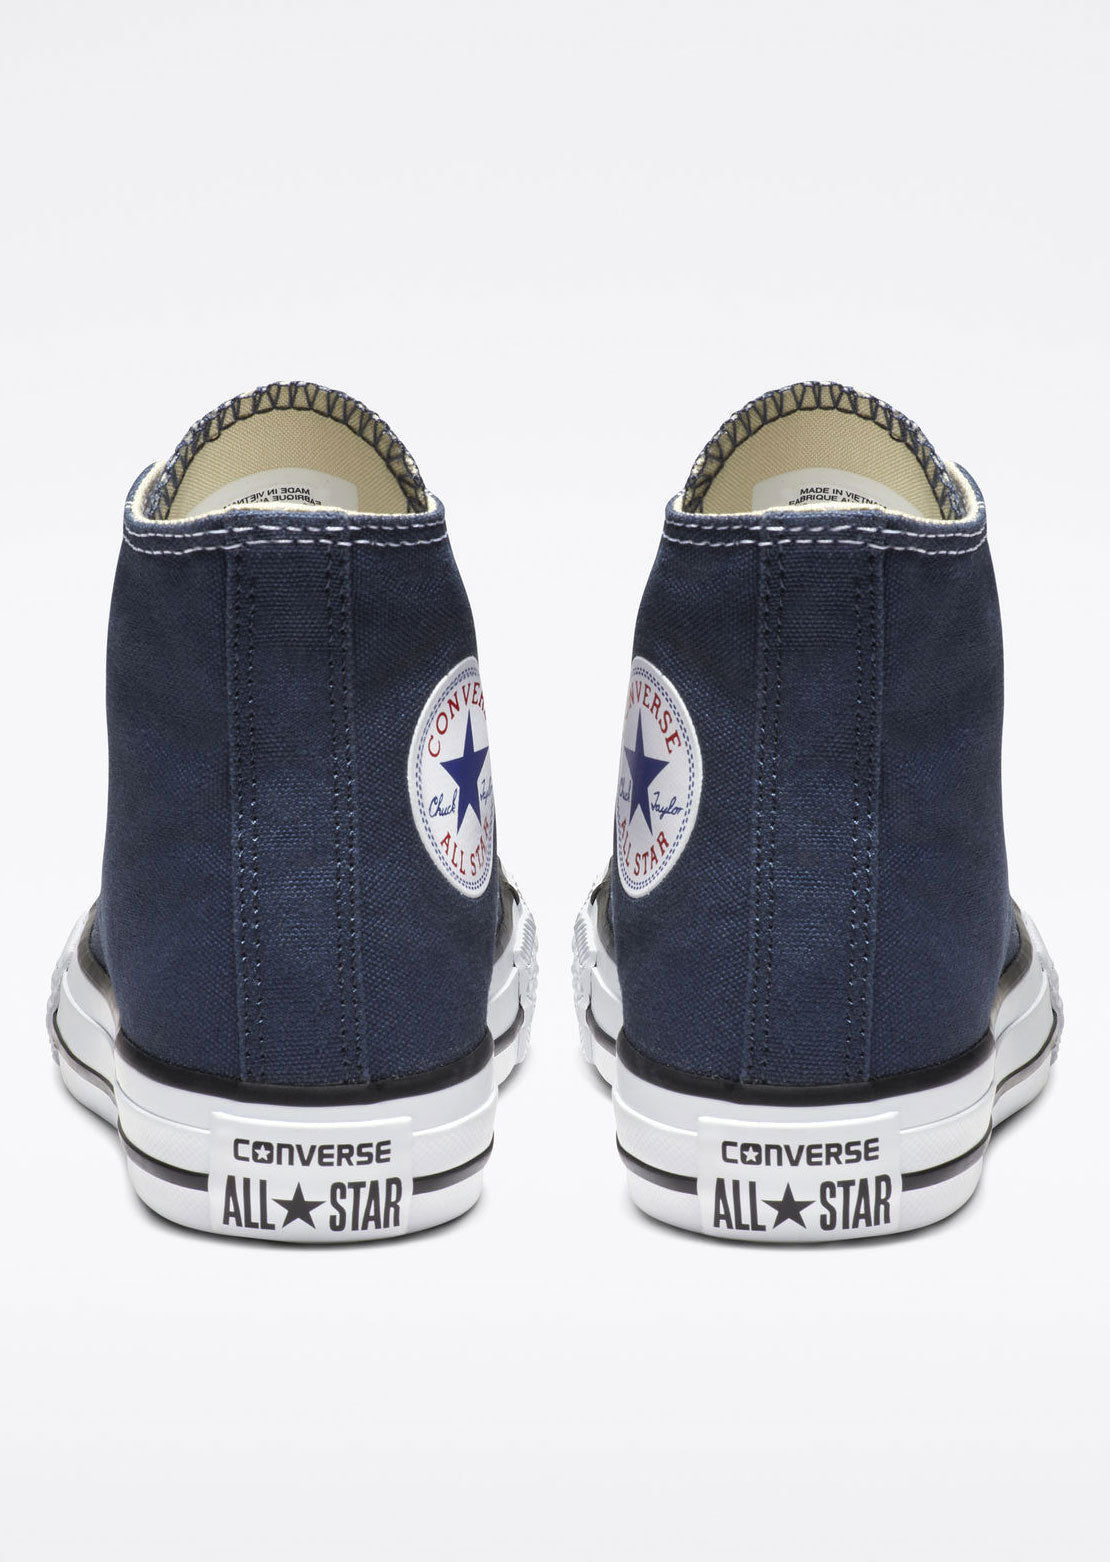 Converse Junior Chuck Taylor All Star Hi Top Shoes 3J233C Navy